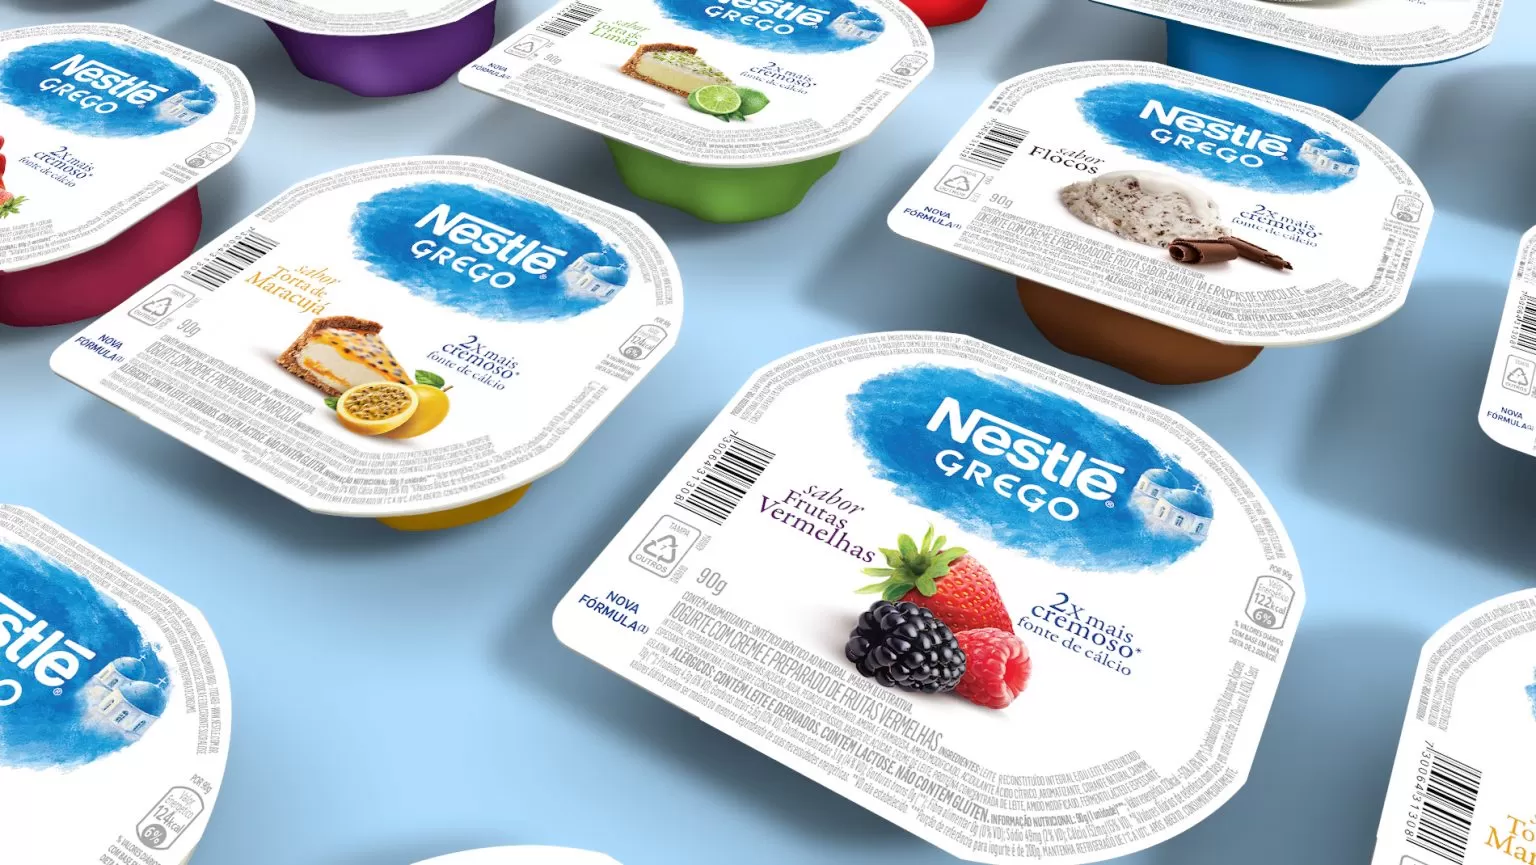 Projeto Renovação do Posicionamento Design das Embalagens Nestlé Grego - Pande